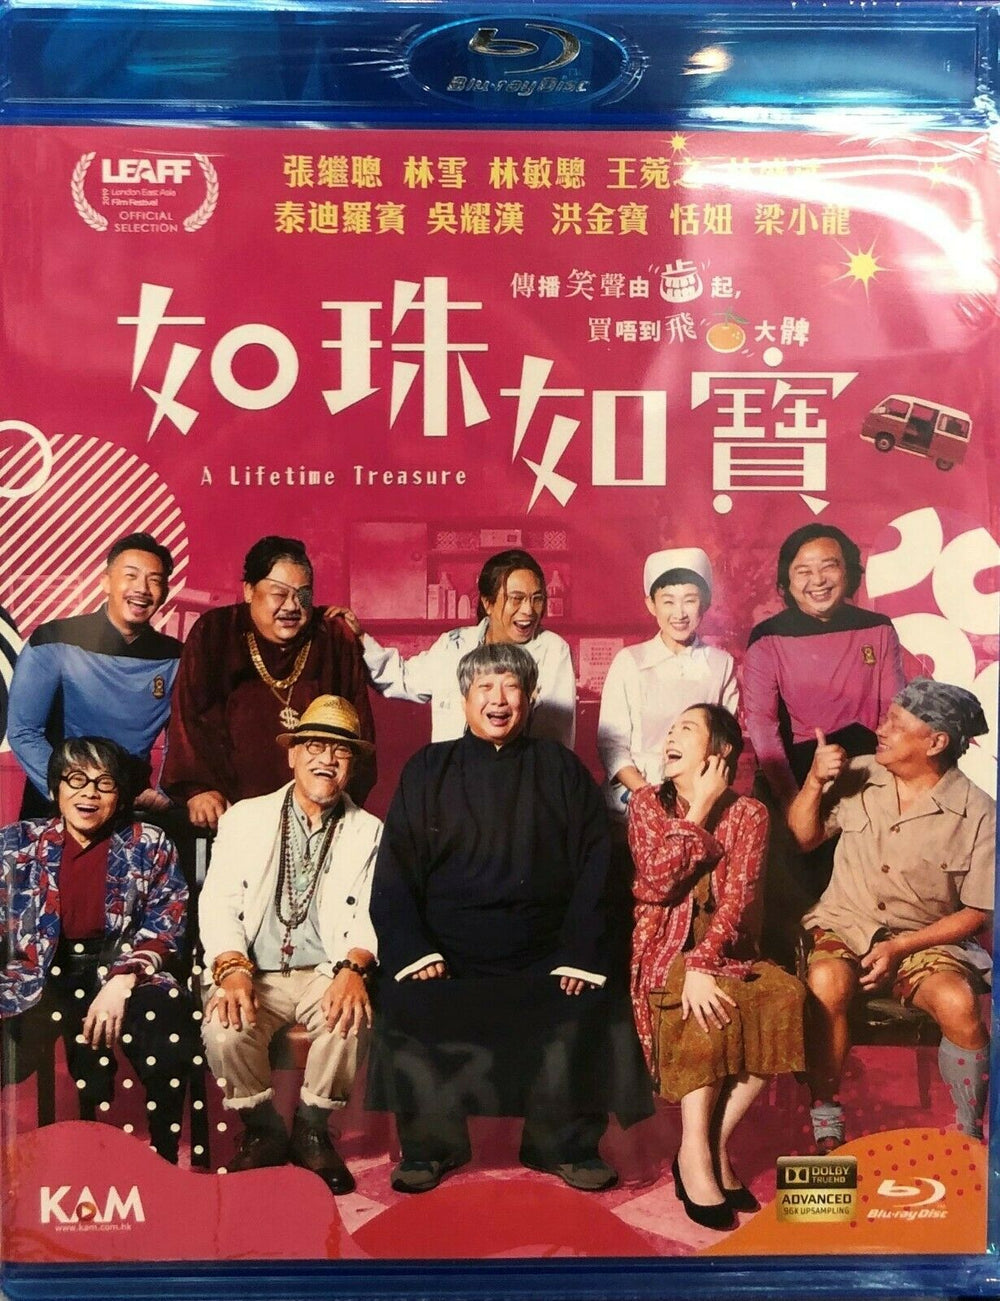 A Lifetime Treasure 如珠如寶 2019 (Hong Kong Movie) BLU-RAY with English Sub (Region A)